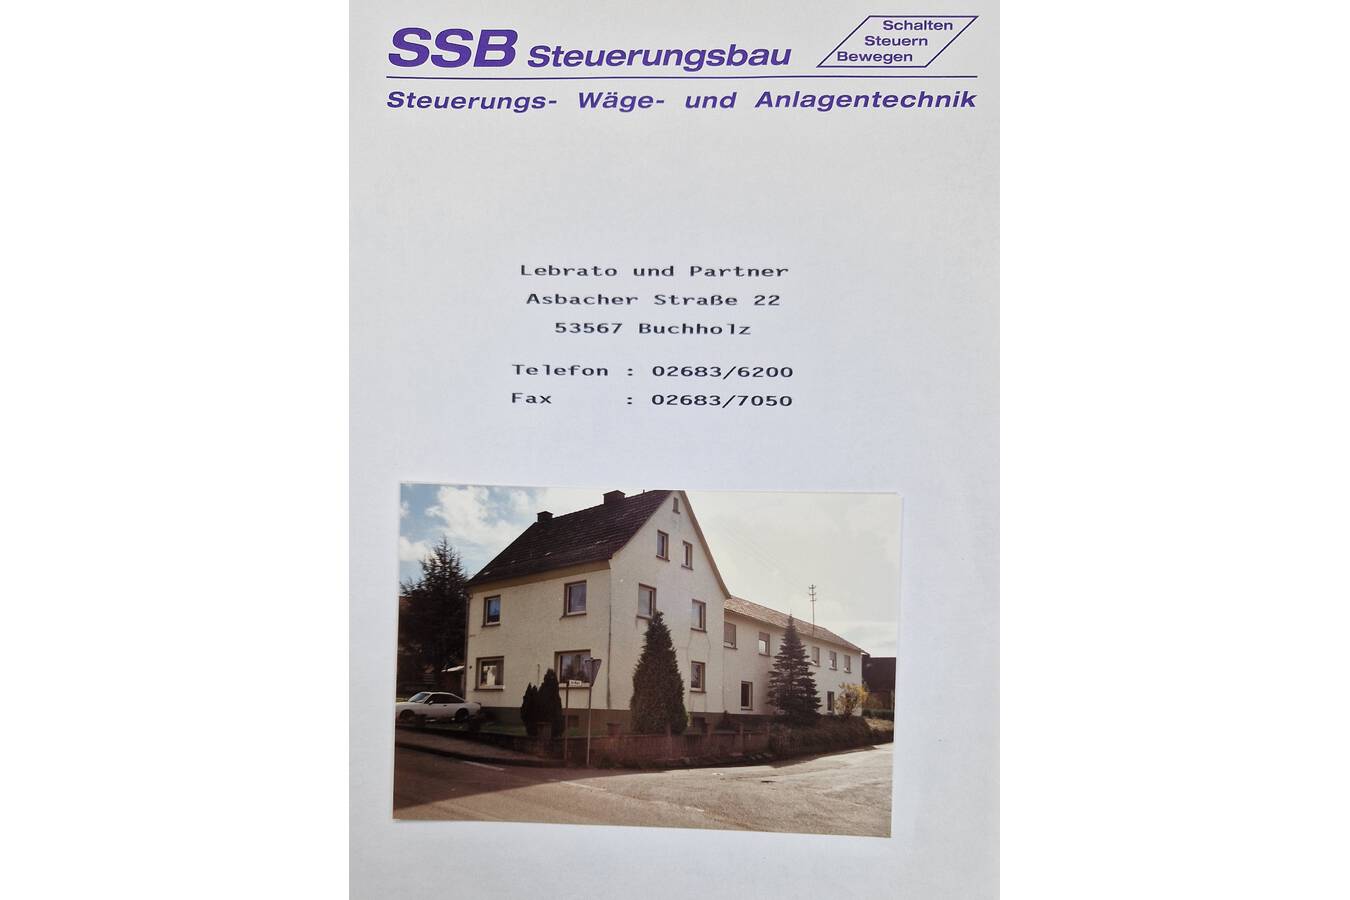 Gründungstag am 22.11. von SSB Wägetechnik Unsere Gründung vor 31 Jahren und mehr zu unserer Unternehmensgeschichte